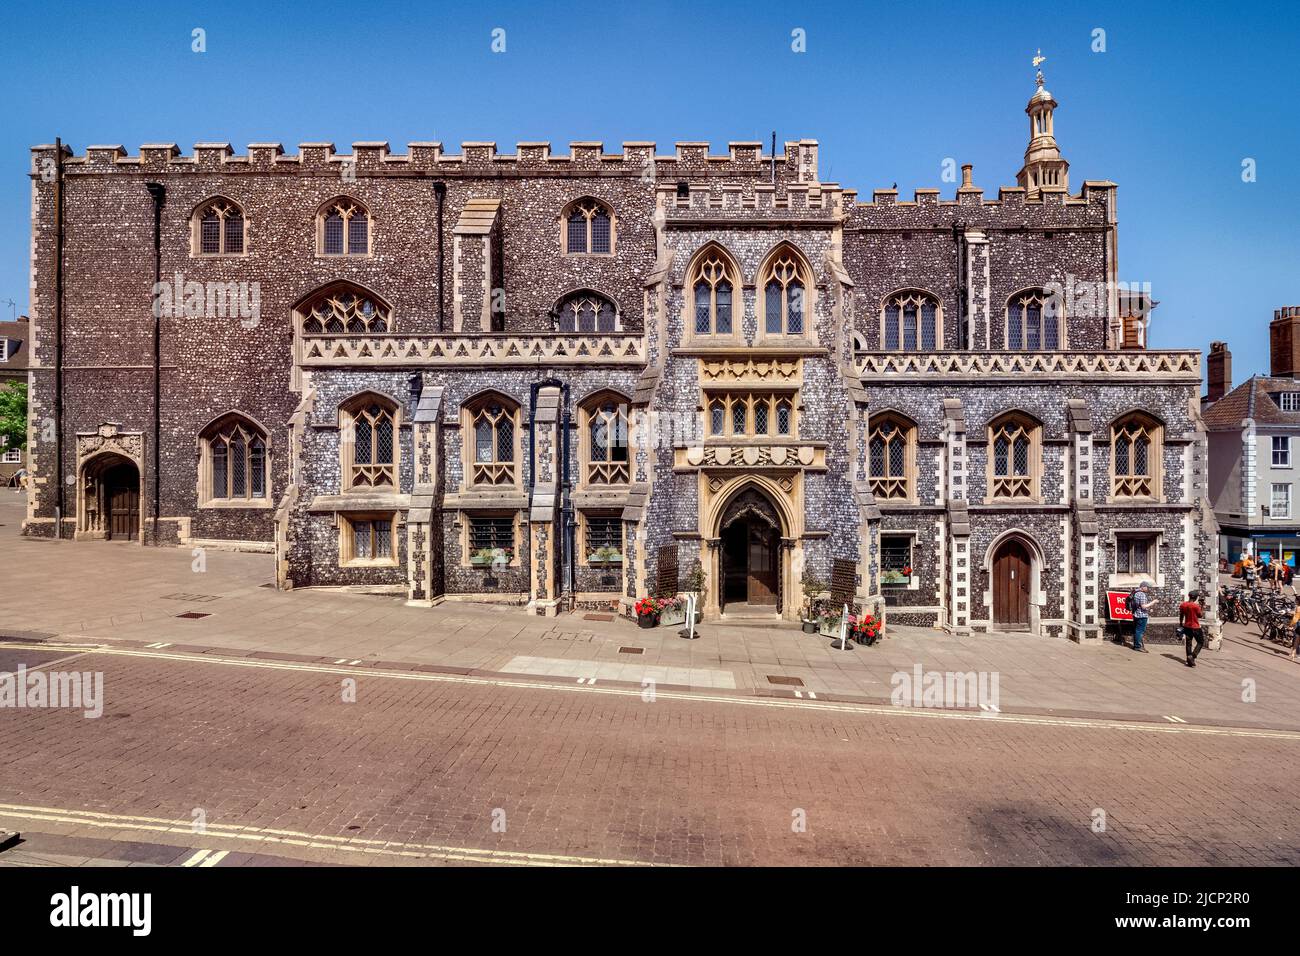 29 juin 2019 : Norwich, Norfolk, Royaume-Uni - The Guildhall, les 15th anciens bureaux du gouvernement local, sur Jail Hill, Norwich. Banque D'Images